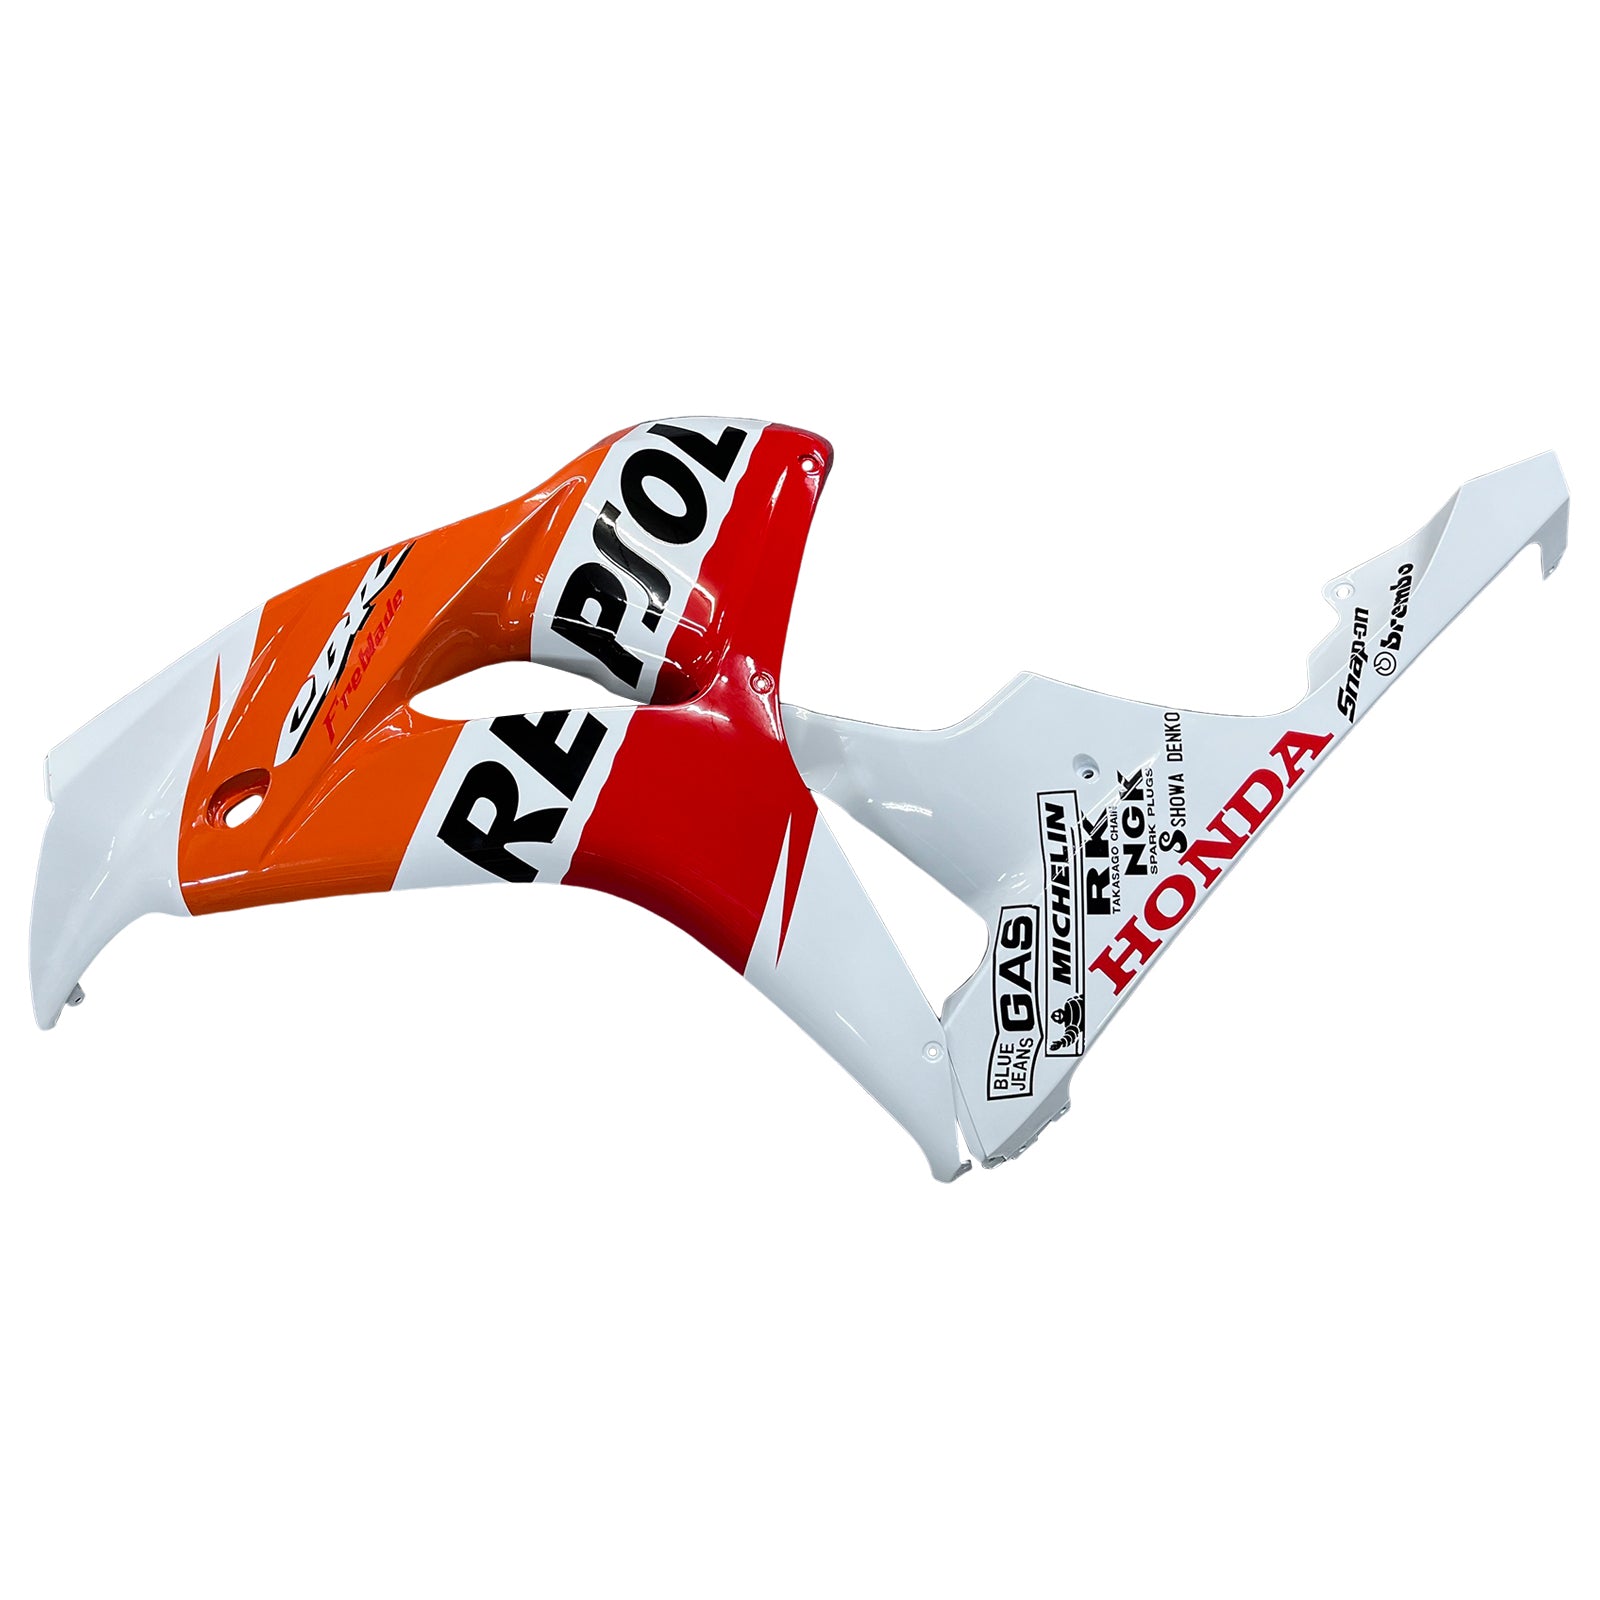 Amotopart Repsol Racing Verkleidungssatz für Honda CBR1000RR 2006–2007, Weiß/Orange